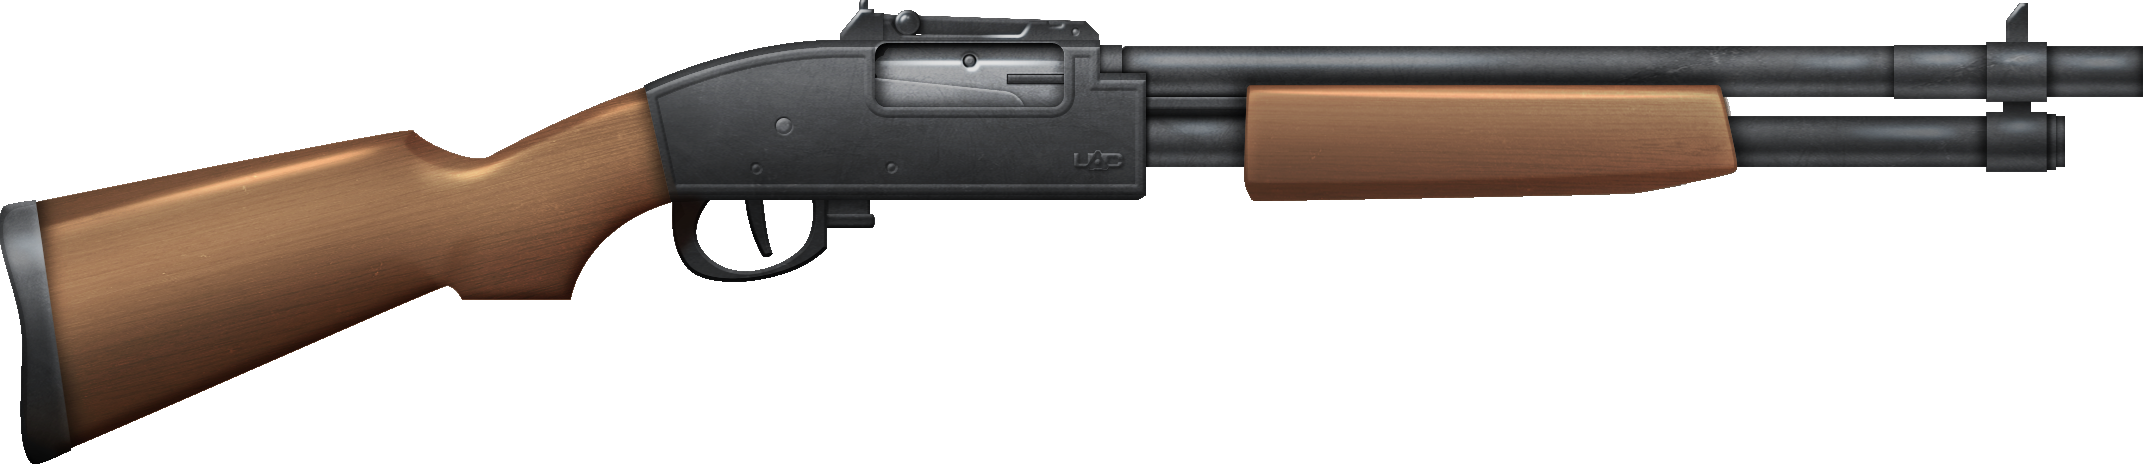 Gun Fire Png 2143 X 465